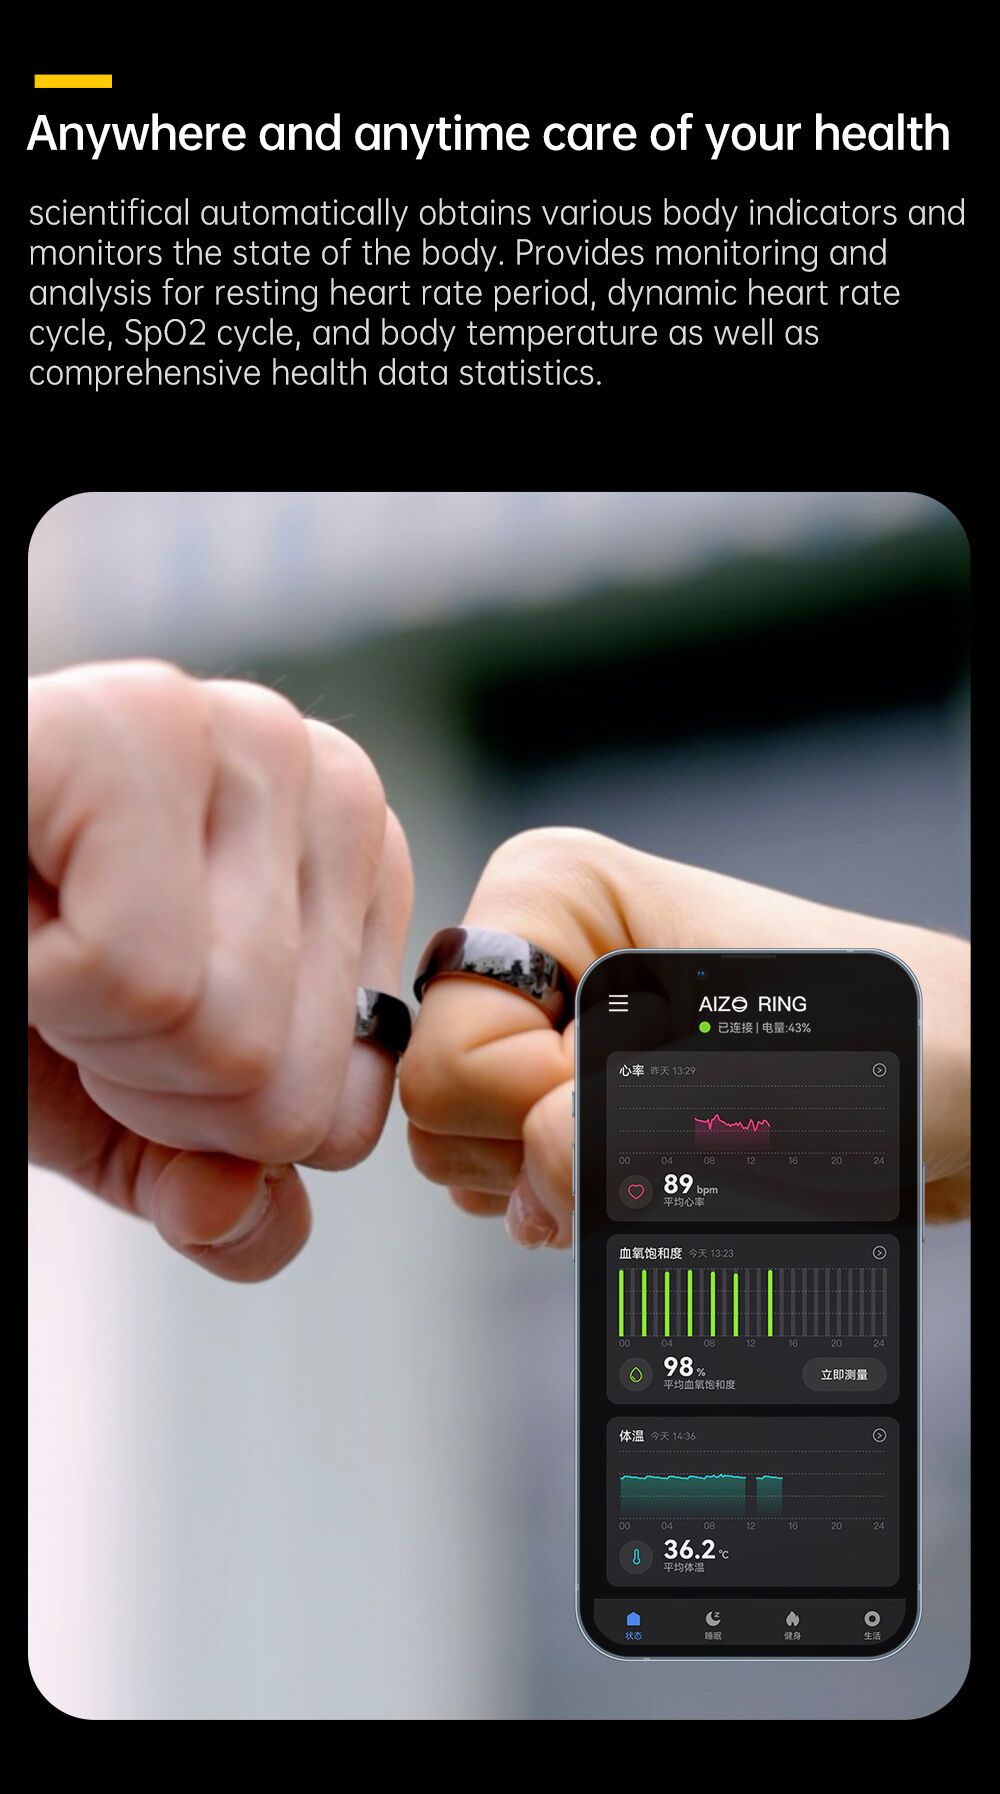 Compre Anillo Inteligente De Moda De Metal Ultrafino 5atm Tik Tok Touch Sos  Service Smart Ring y Anillos Inteligentes de China